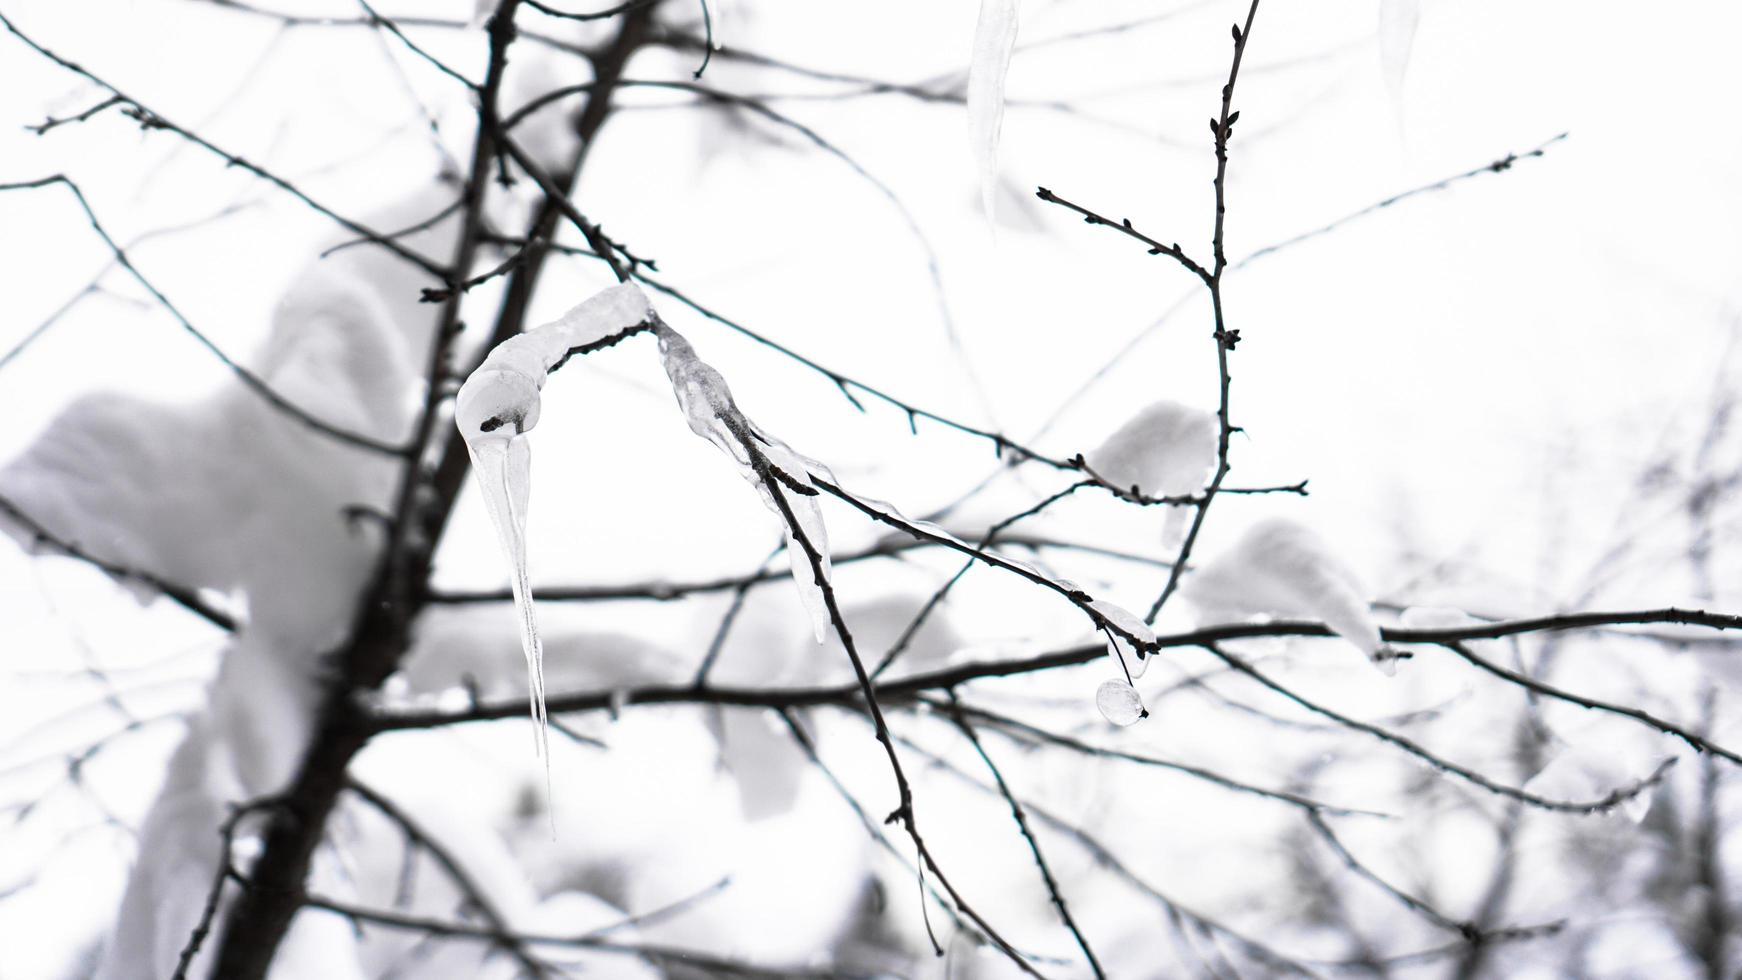 der Zweig ist mit Schnee bedeckt. eine dünne Eisschicht. weiche Ausleuchtung foto